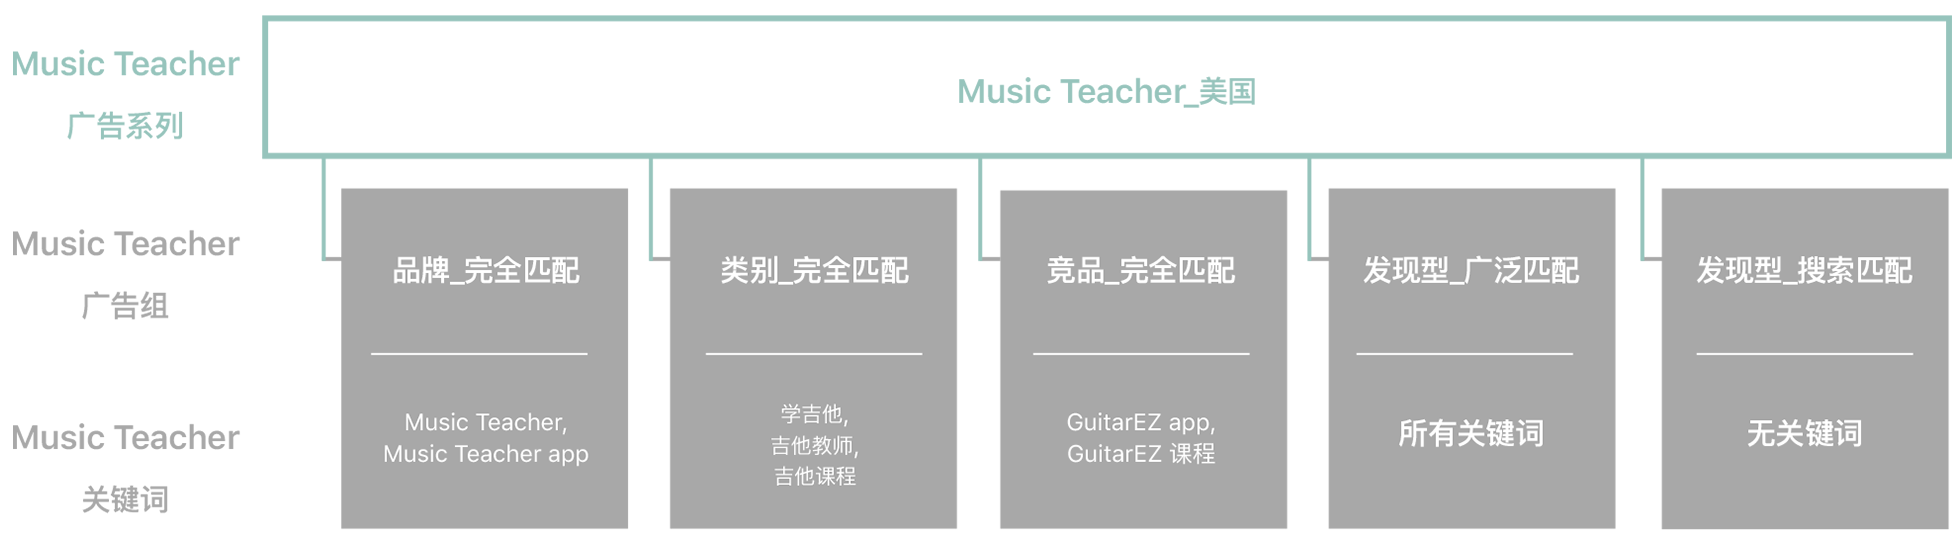 示例 app“Music Teacher”的广告系列类型、相关广告组、建议的关键词和提示的图表。 